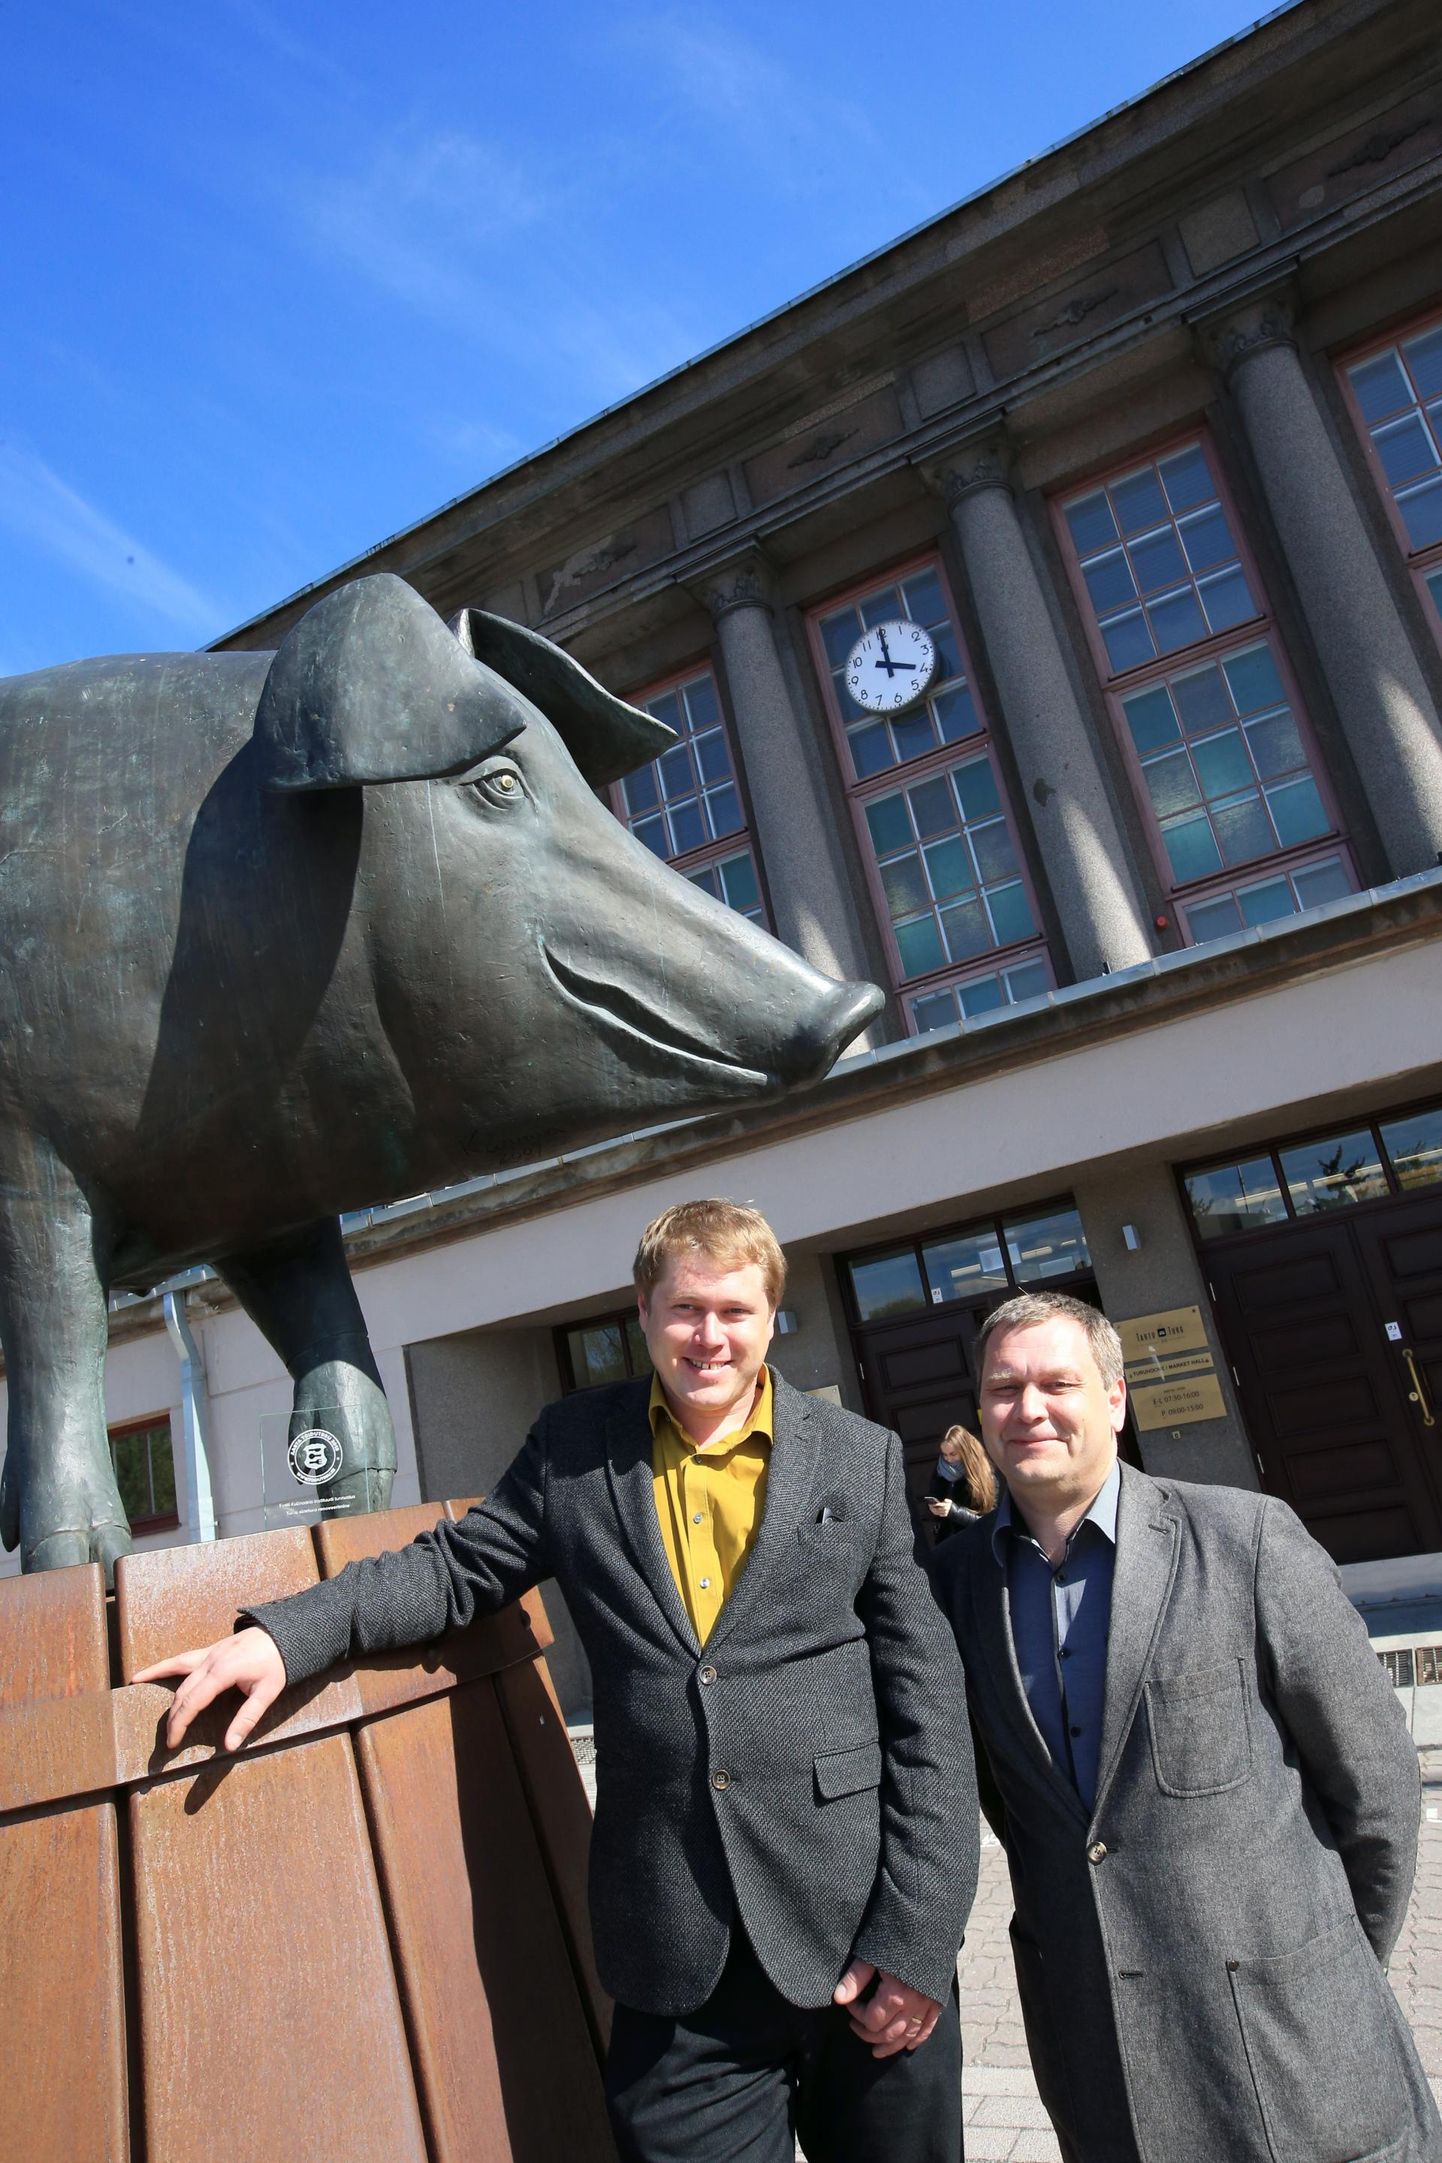 ASi Tartu Turg tegevjuhil Ivo Tombakul (vasakul) on täna viimane tööpäev, homme asub tema asemel ajutiselt tööle ettevõtja Rene Kiis. Uut kindlat töökohta Ivo Tombakul veel pole, ta kavatseb jätkata kaubanduses.